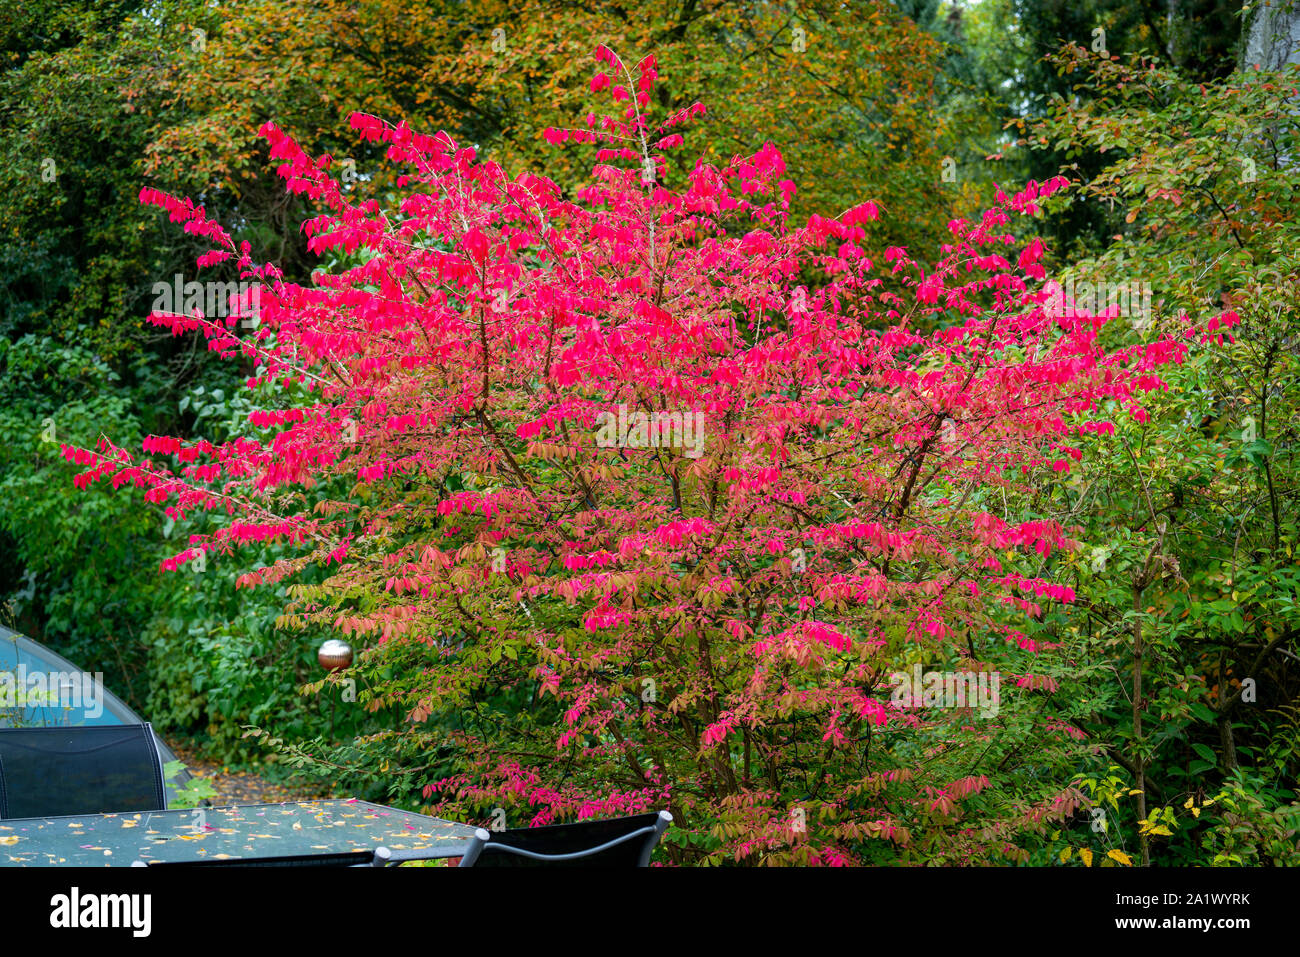 Image colorée d'une combustion ailé Euonymus alatus-(bush) à l'automne avec des feuilles rouge foncé Banque D'Images